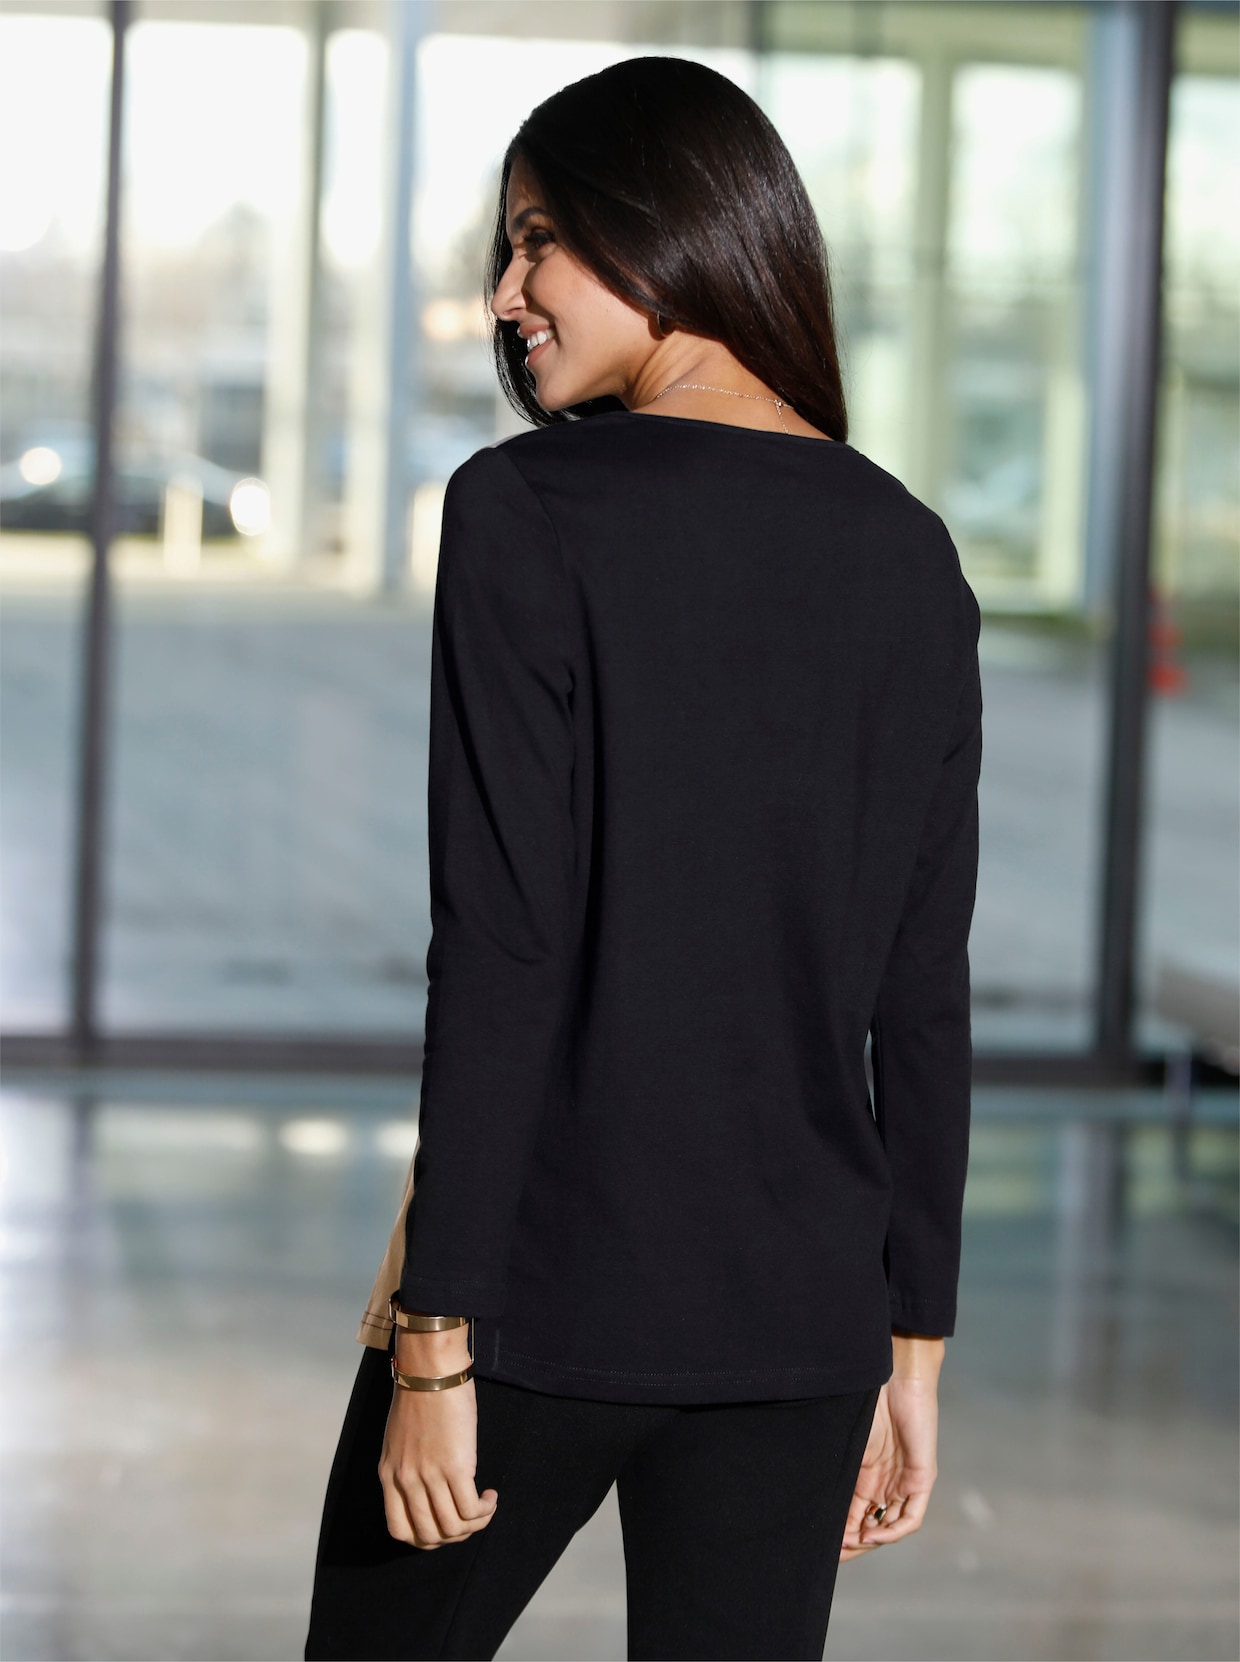 Tričko s dlhými rukávmi - Čierno-ťaví vzor